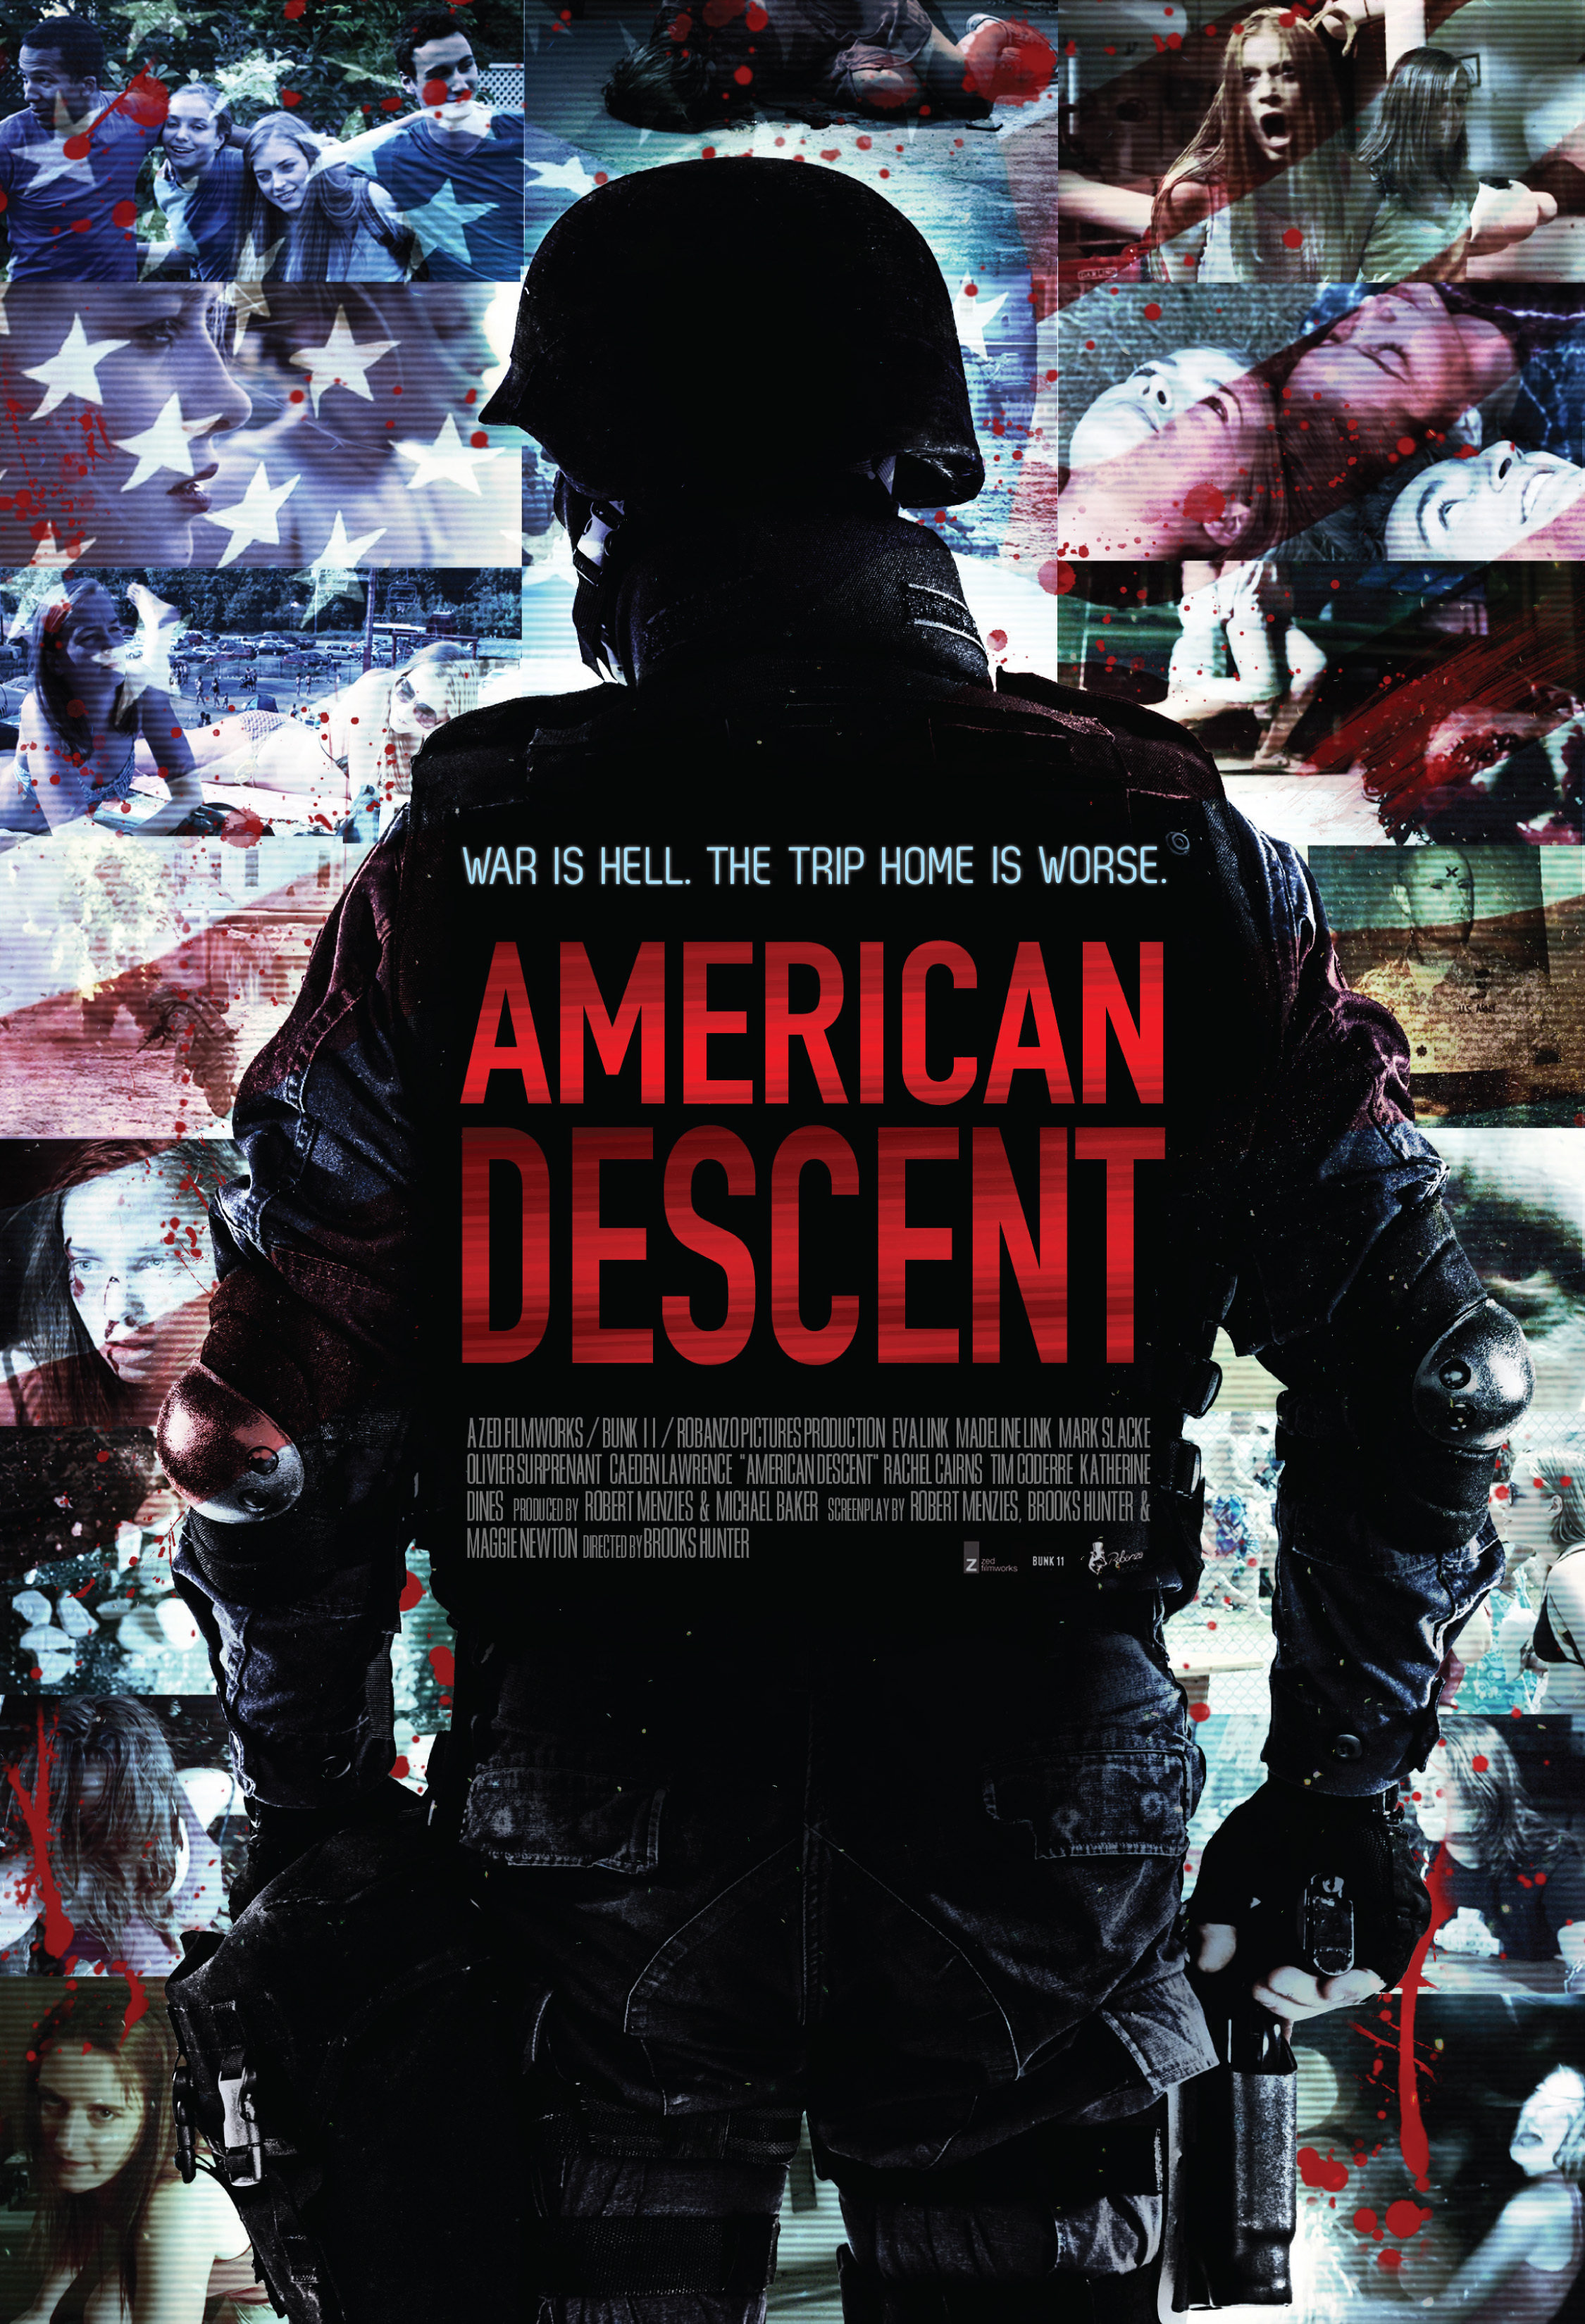 American Descent (2014) Screenshot 1